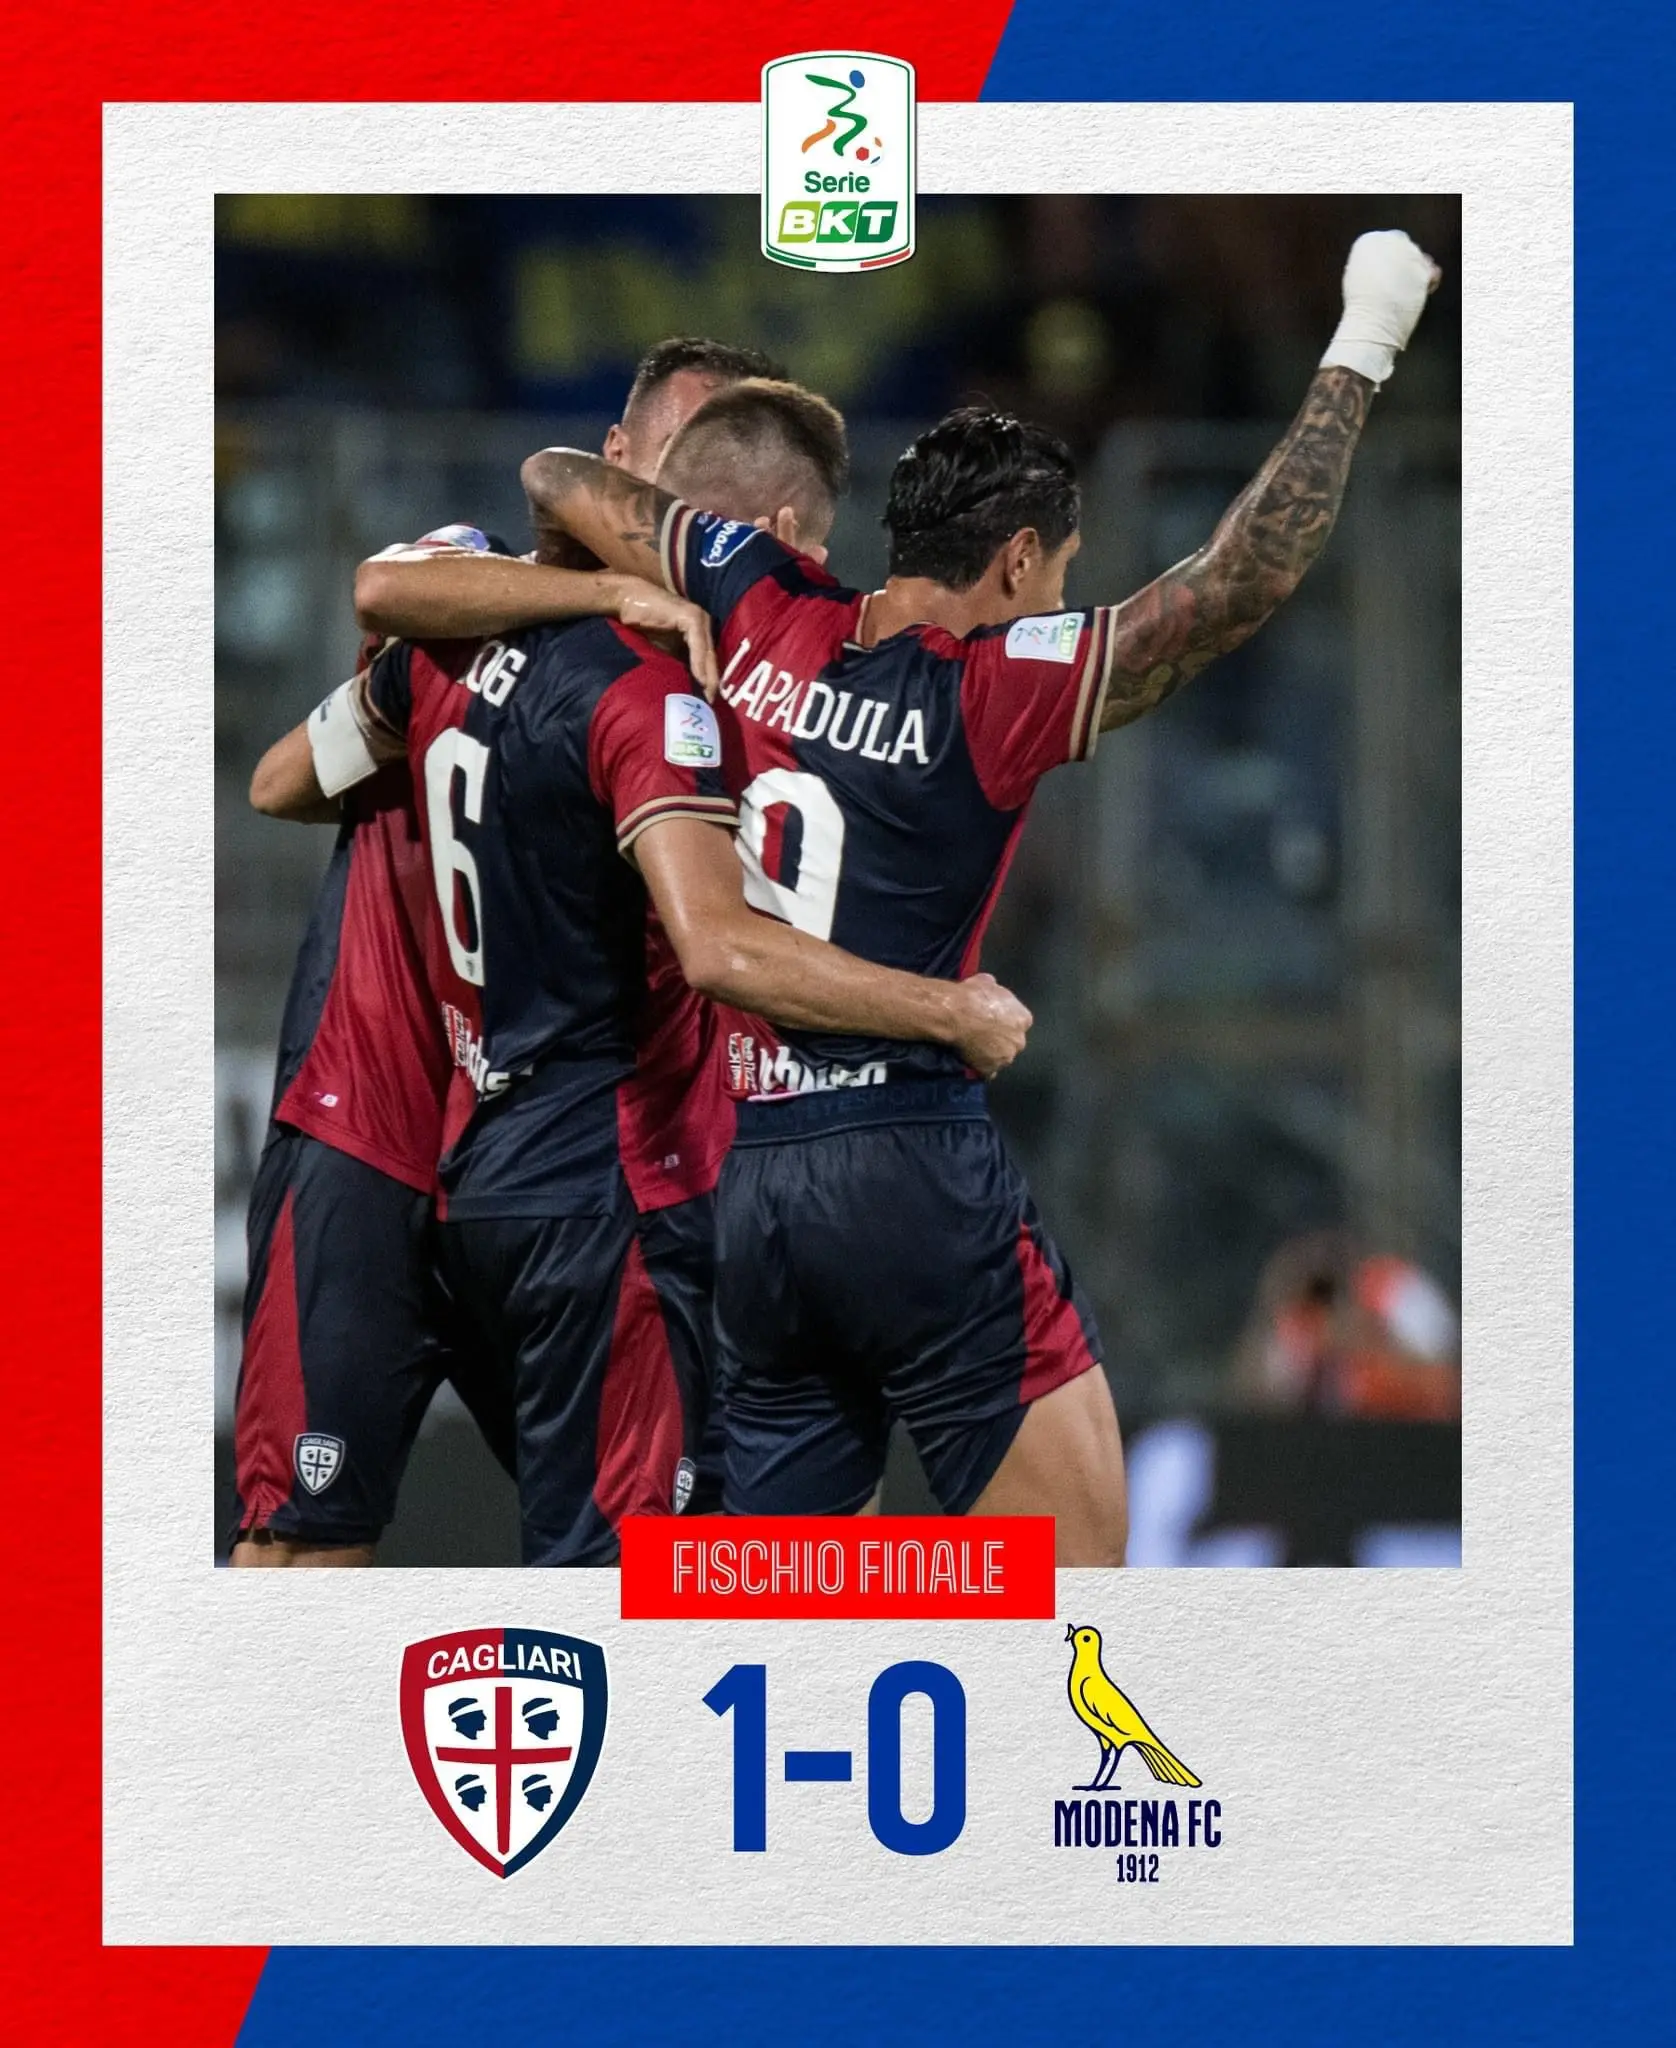 Cagliari - Modena - Modena FC